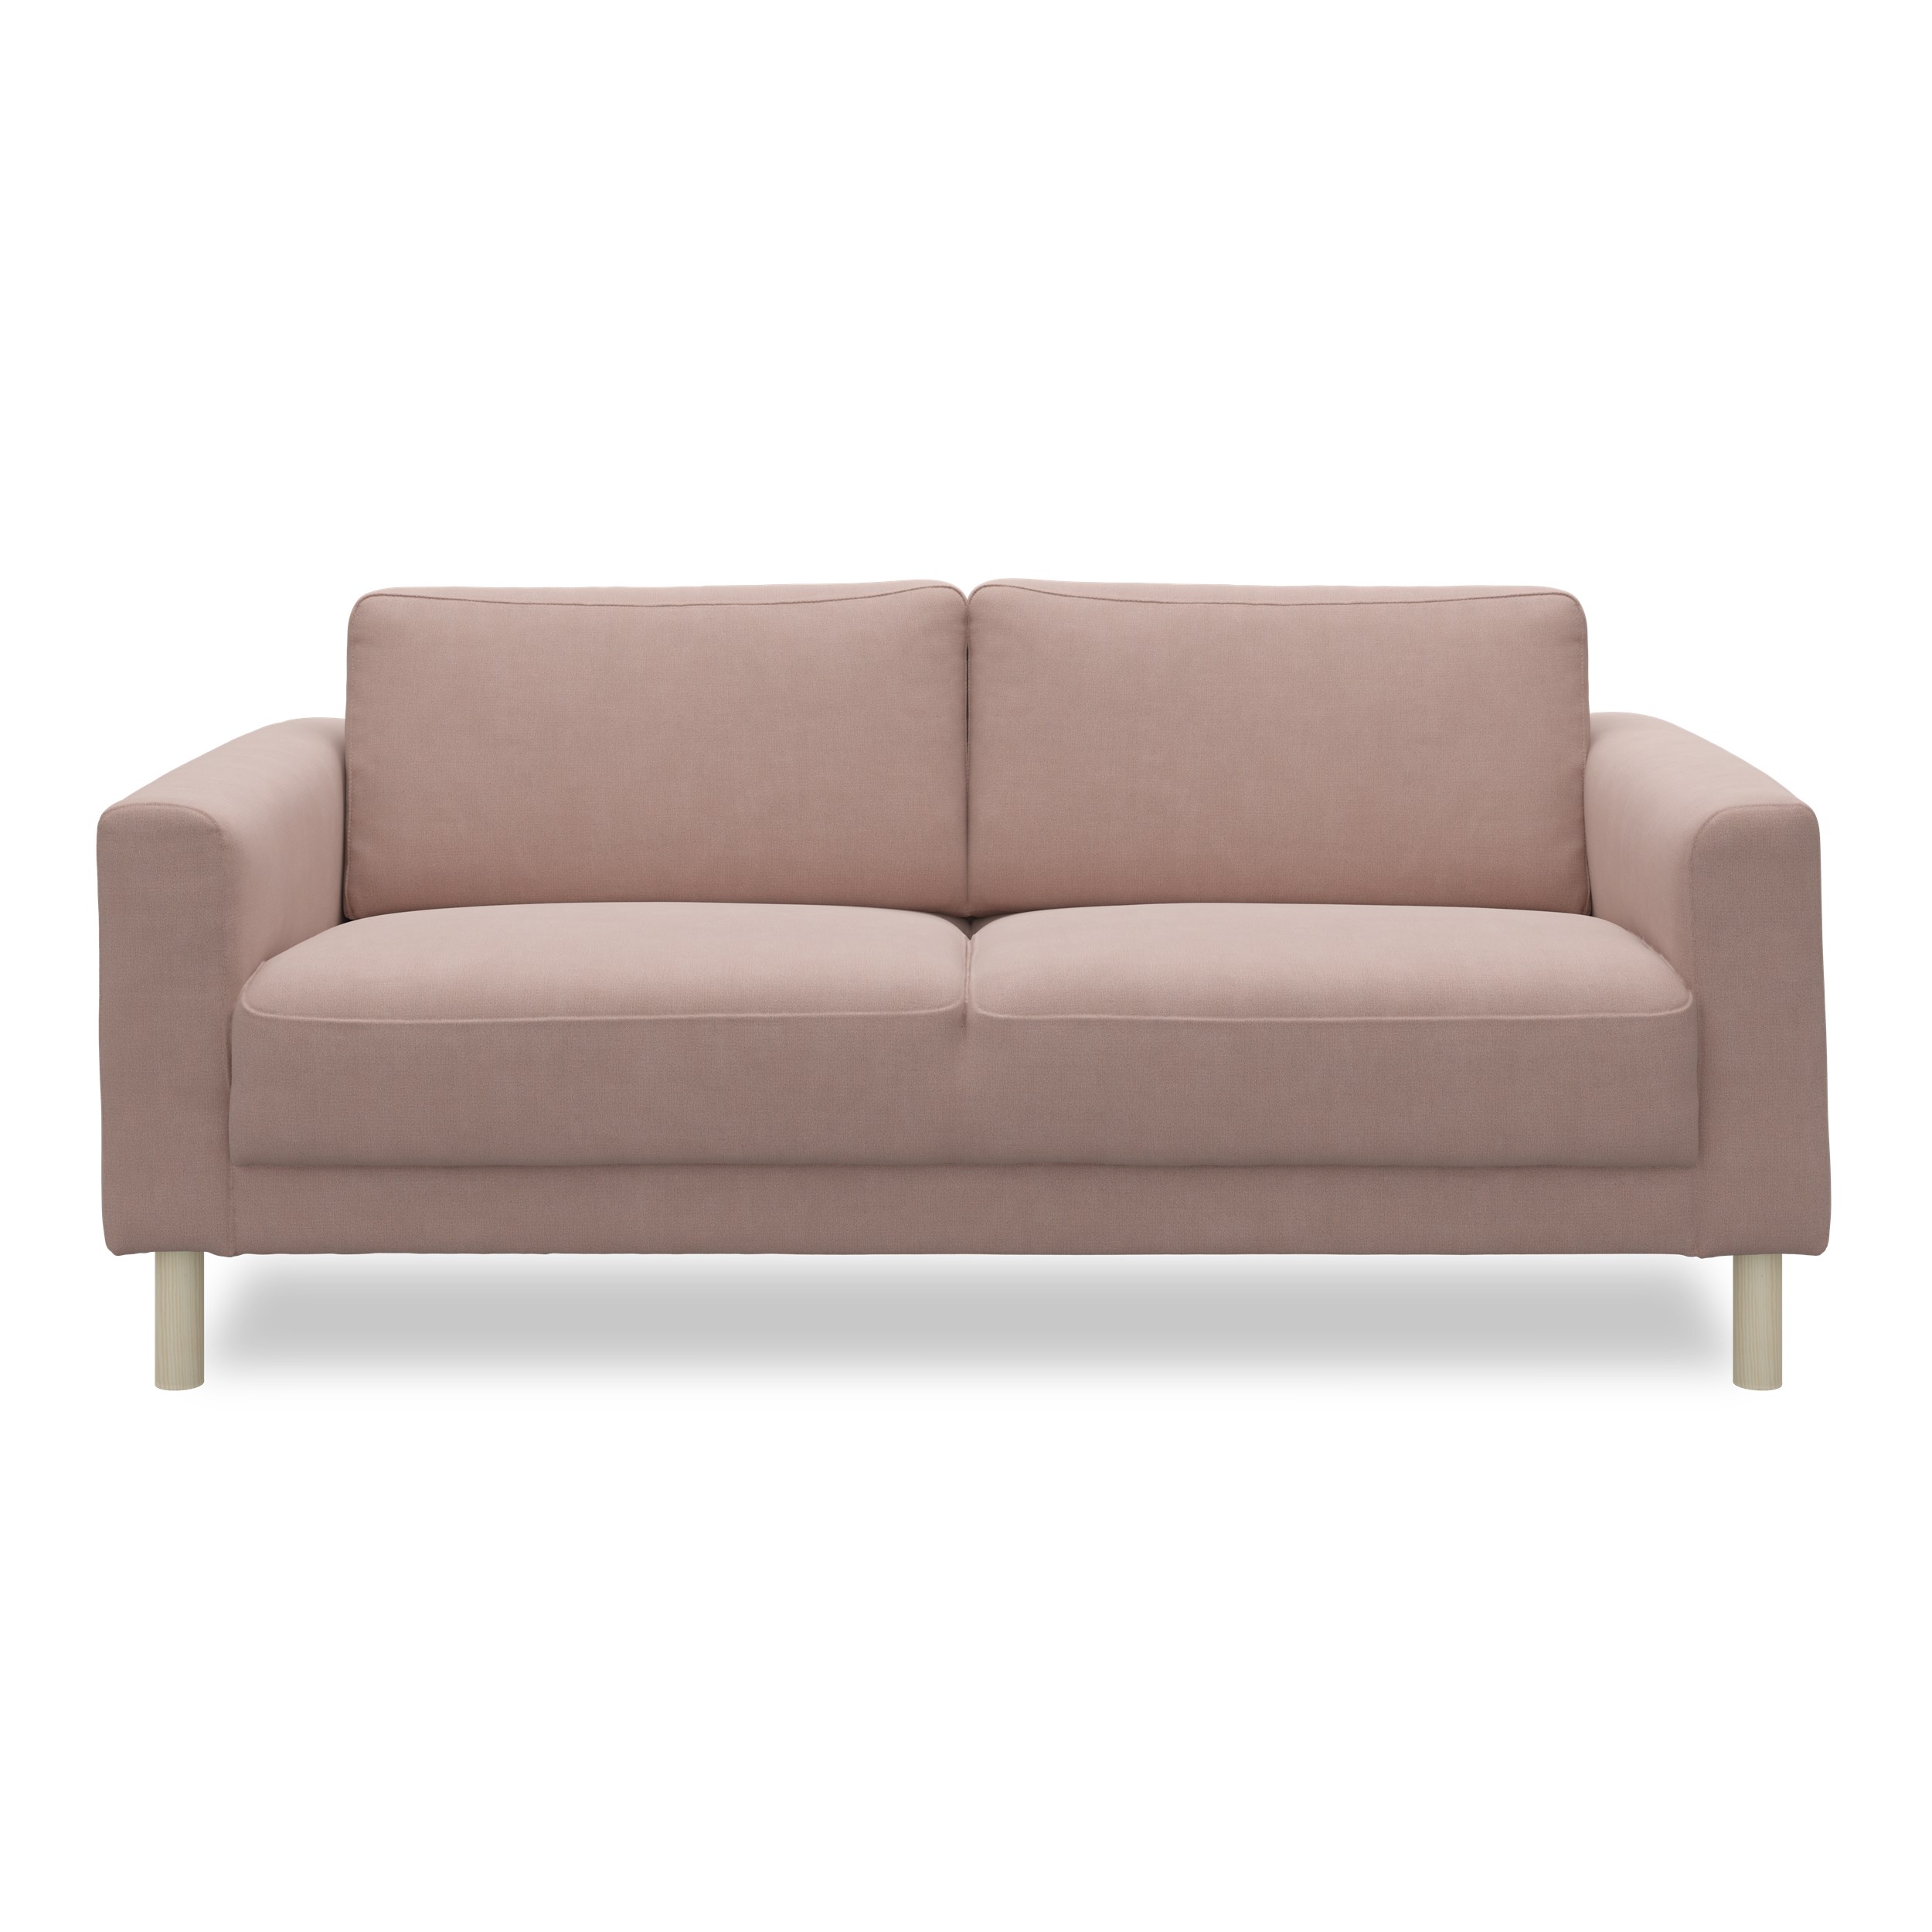 Cleveland 2 pers. Sofa - Soft 452 Rose stof, Ben i hvidolieret fyrretræ og sæde i polyetherskum, ryg i polyetherskum